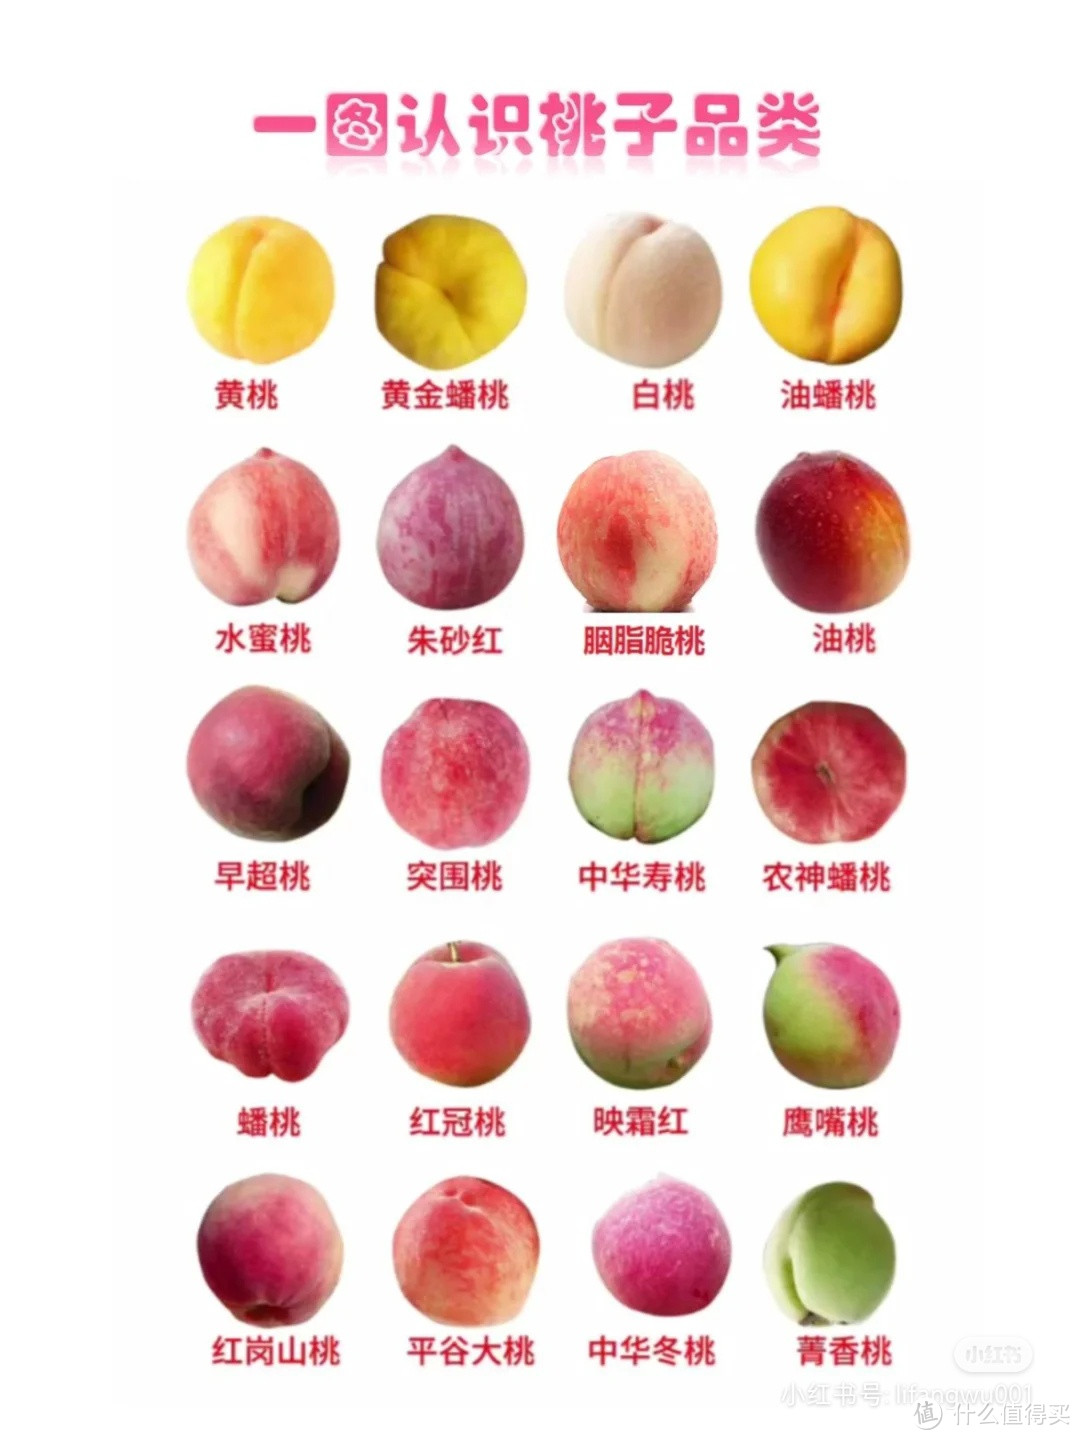 认识桃子的种类……